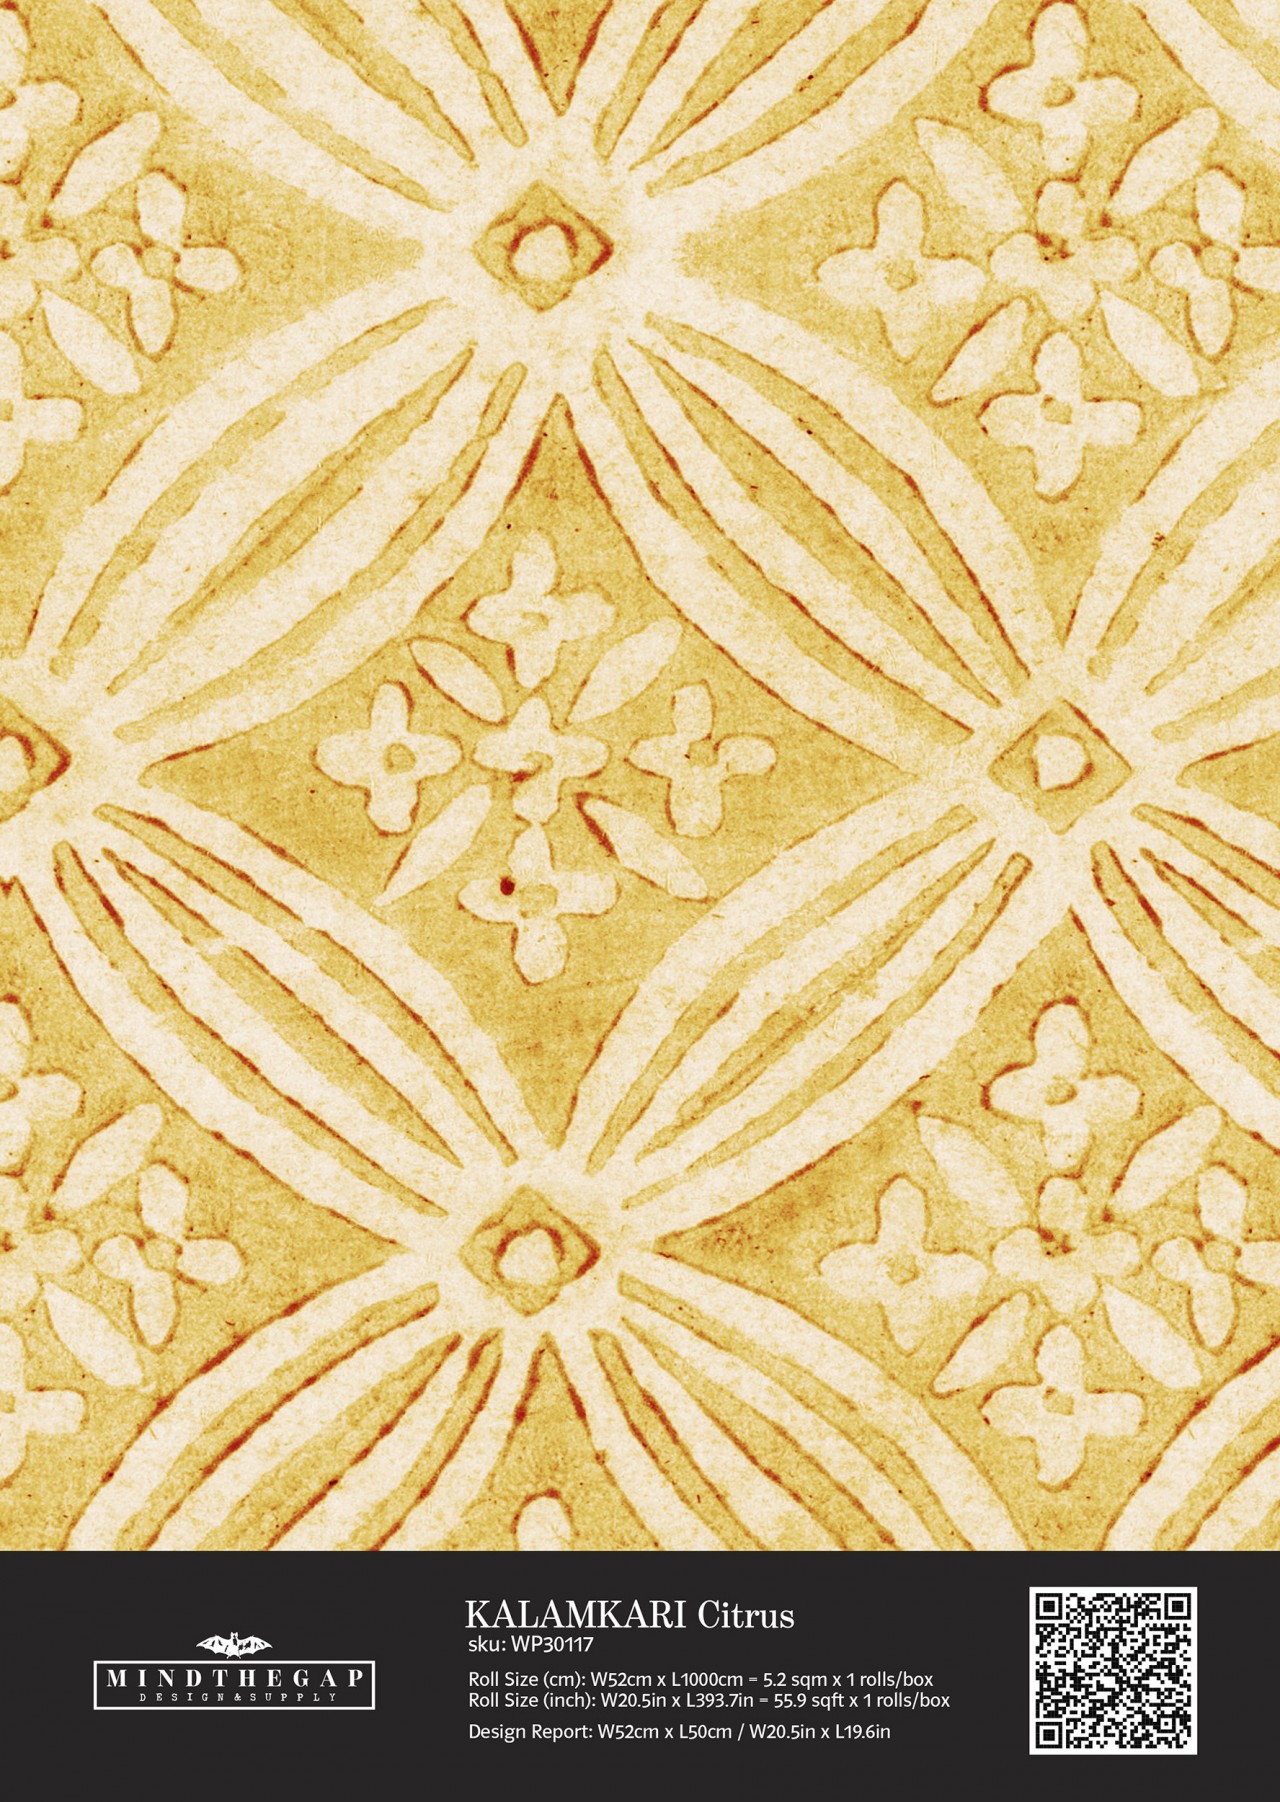 KALAMKARI Citrus Wallpaper Sample